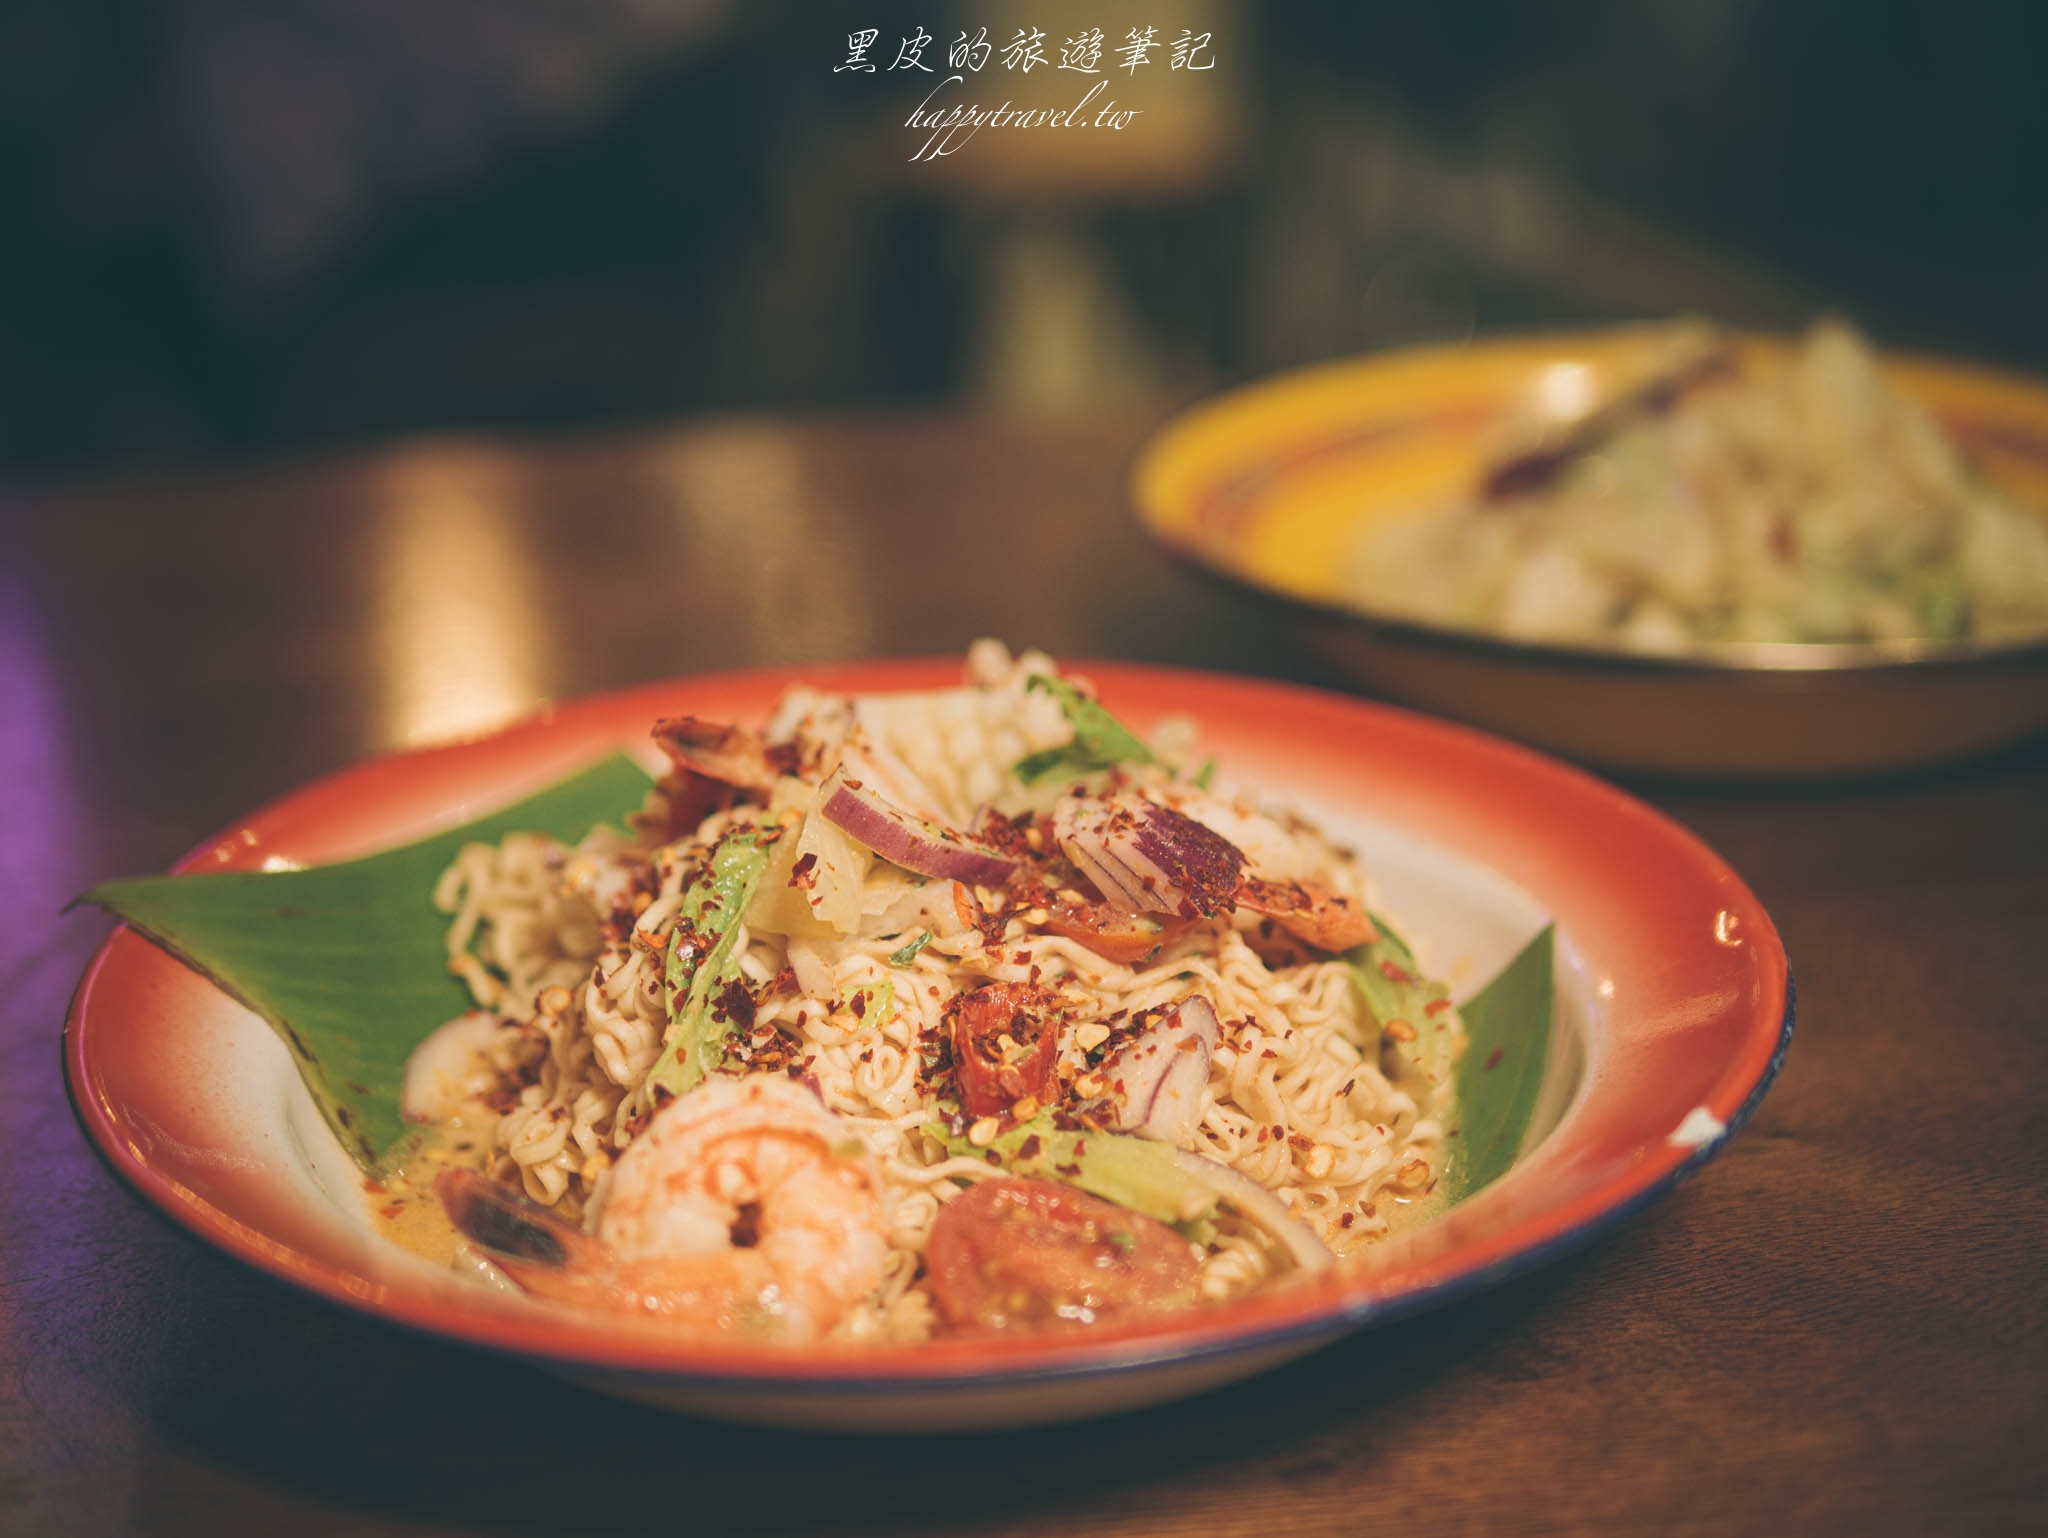 台南美食。沙白電台สบาย เรดิโอ｜街頭風的美食體驗讓人一秒來到曼谷品嚐泰式料理，辣到燒胃的台南泰式料理